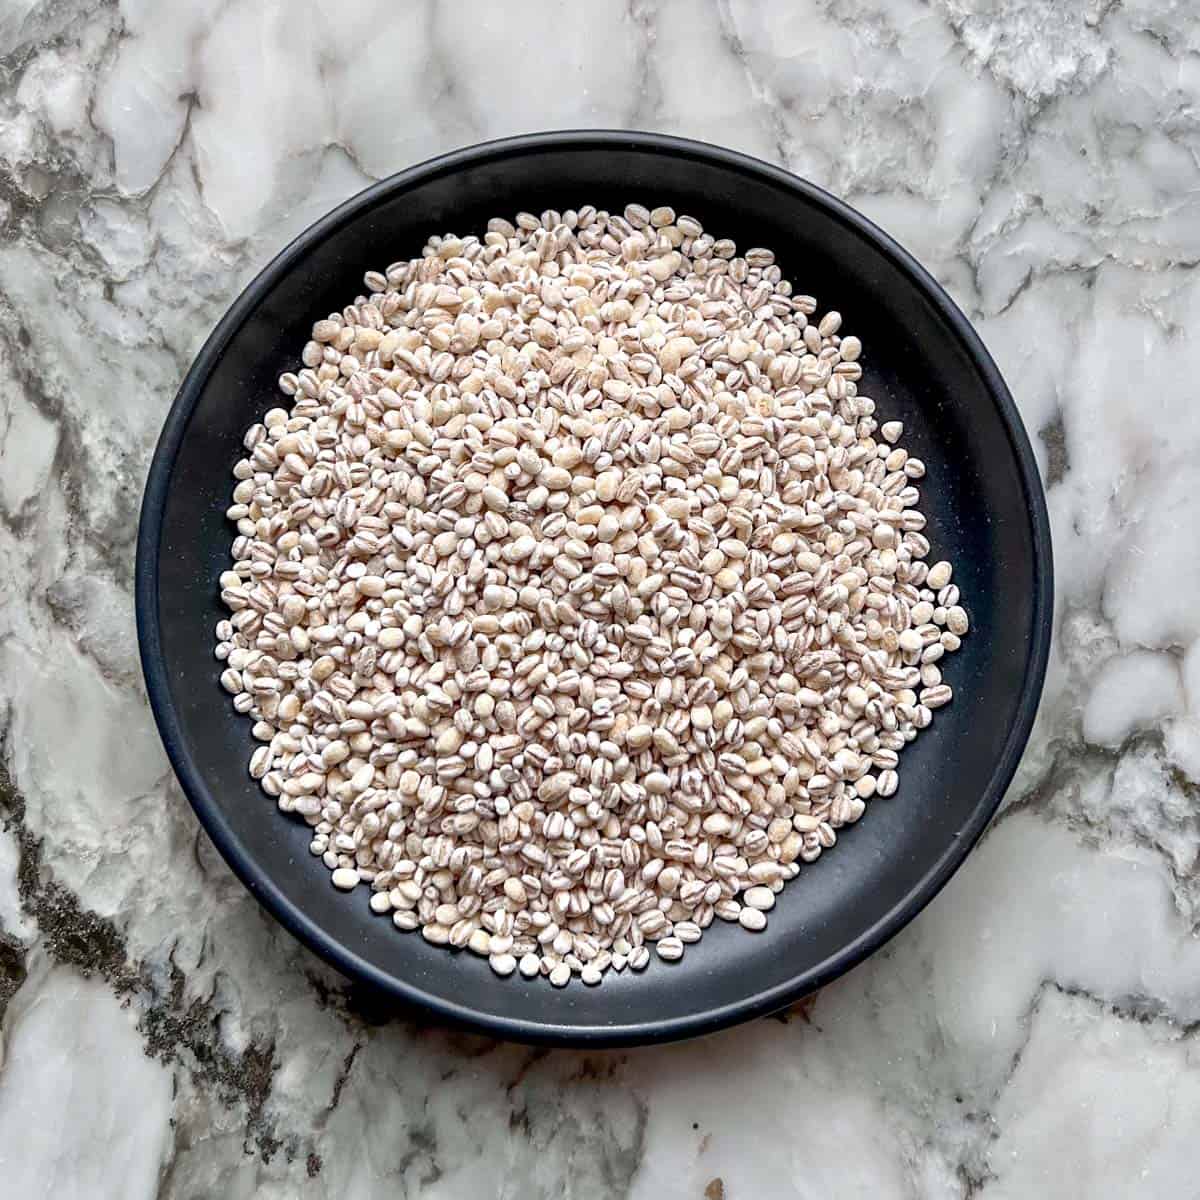 pearled barley in a black bowl 